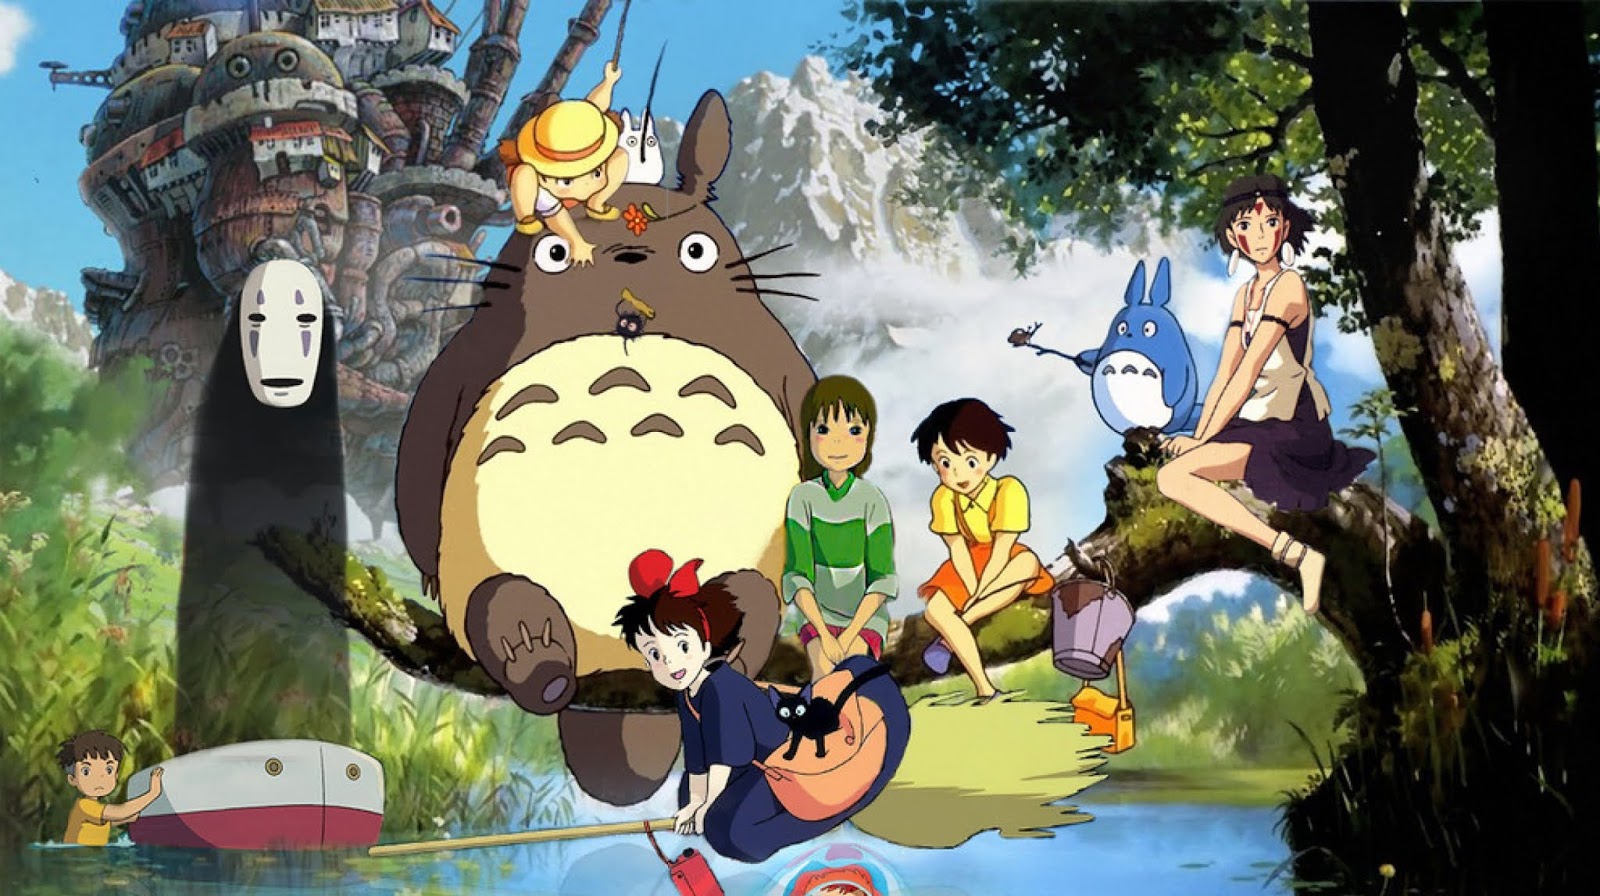 Ghibli characters